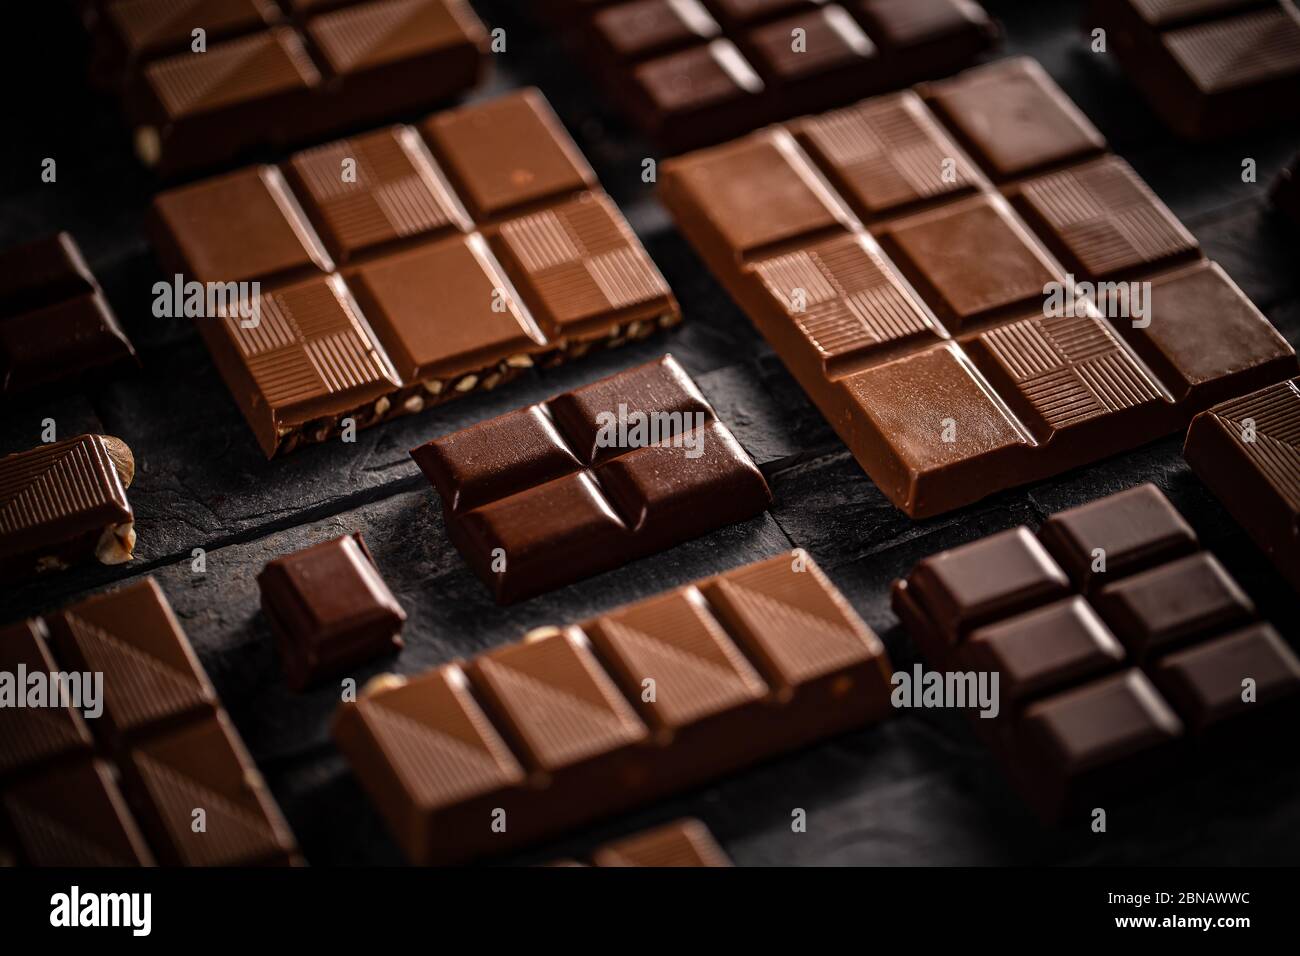 Milk and hazelnut chocolate bars on black background Stock Photo